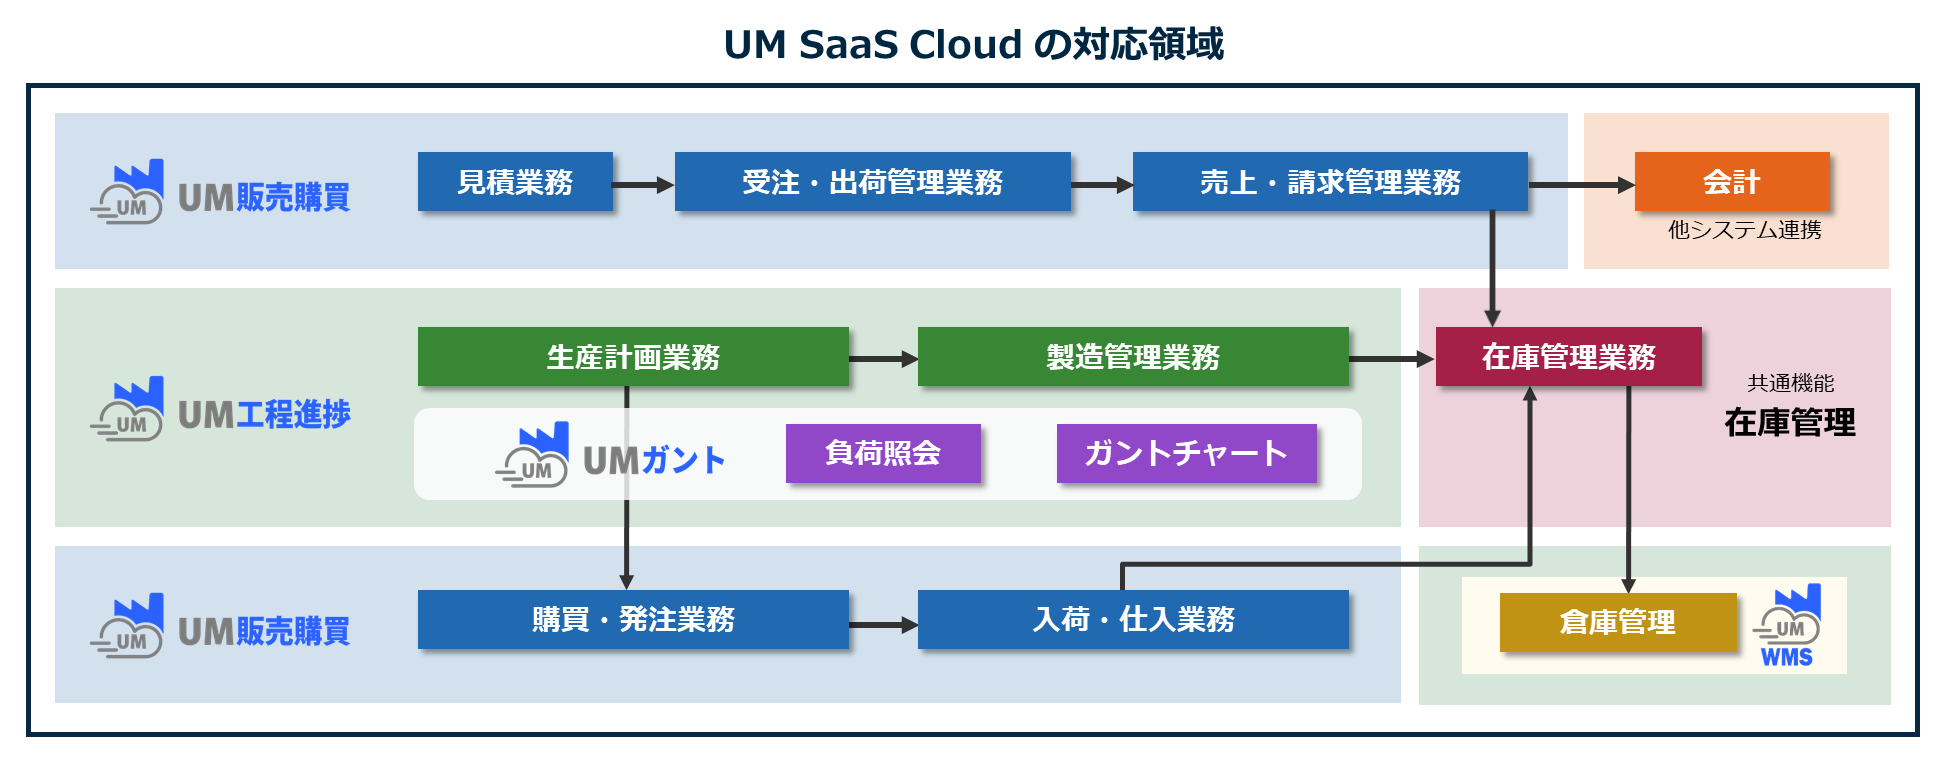 UM SaaS Cloudの対応領域